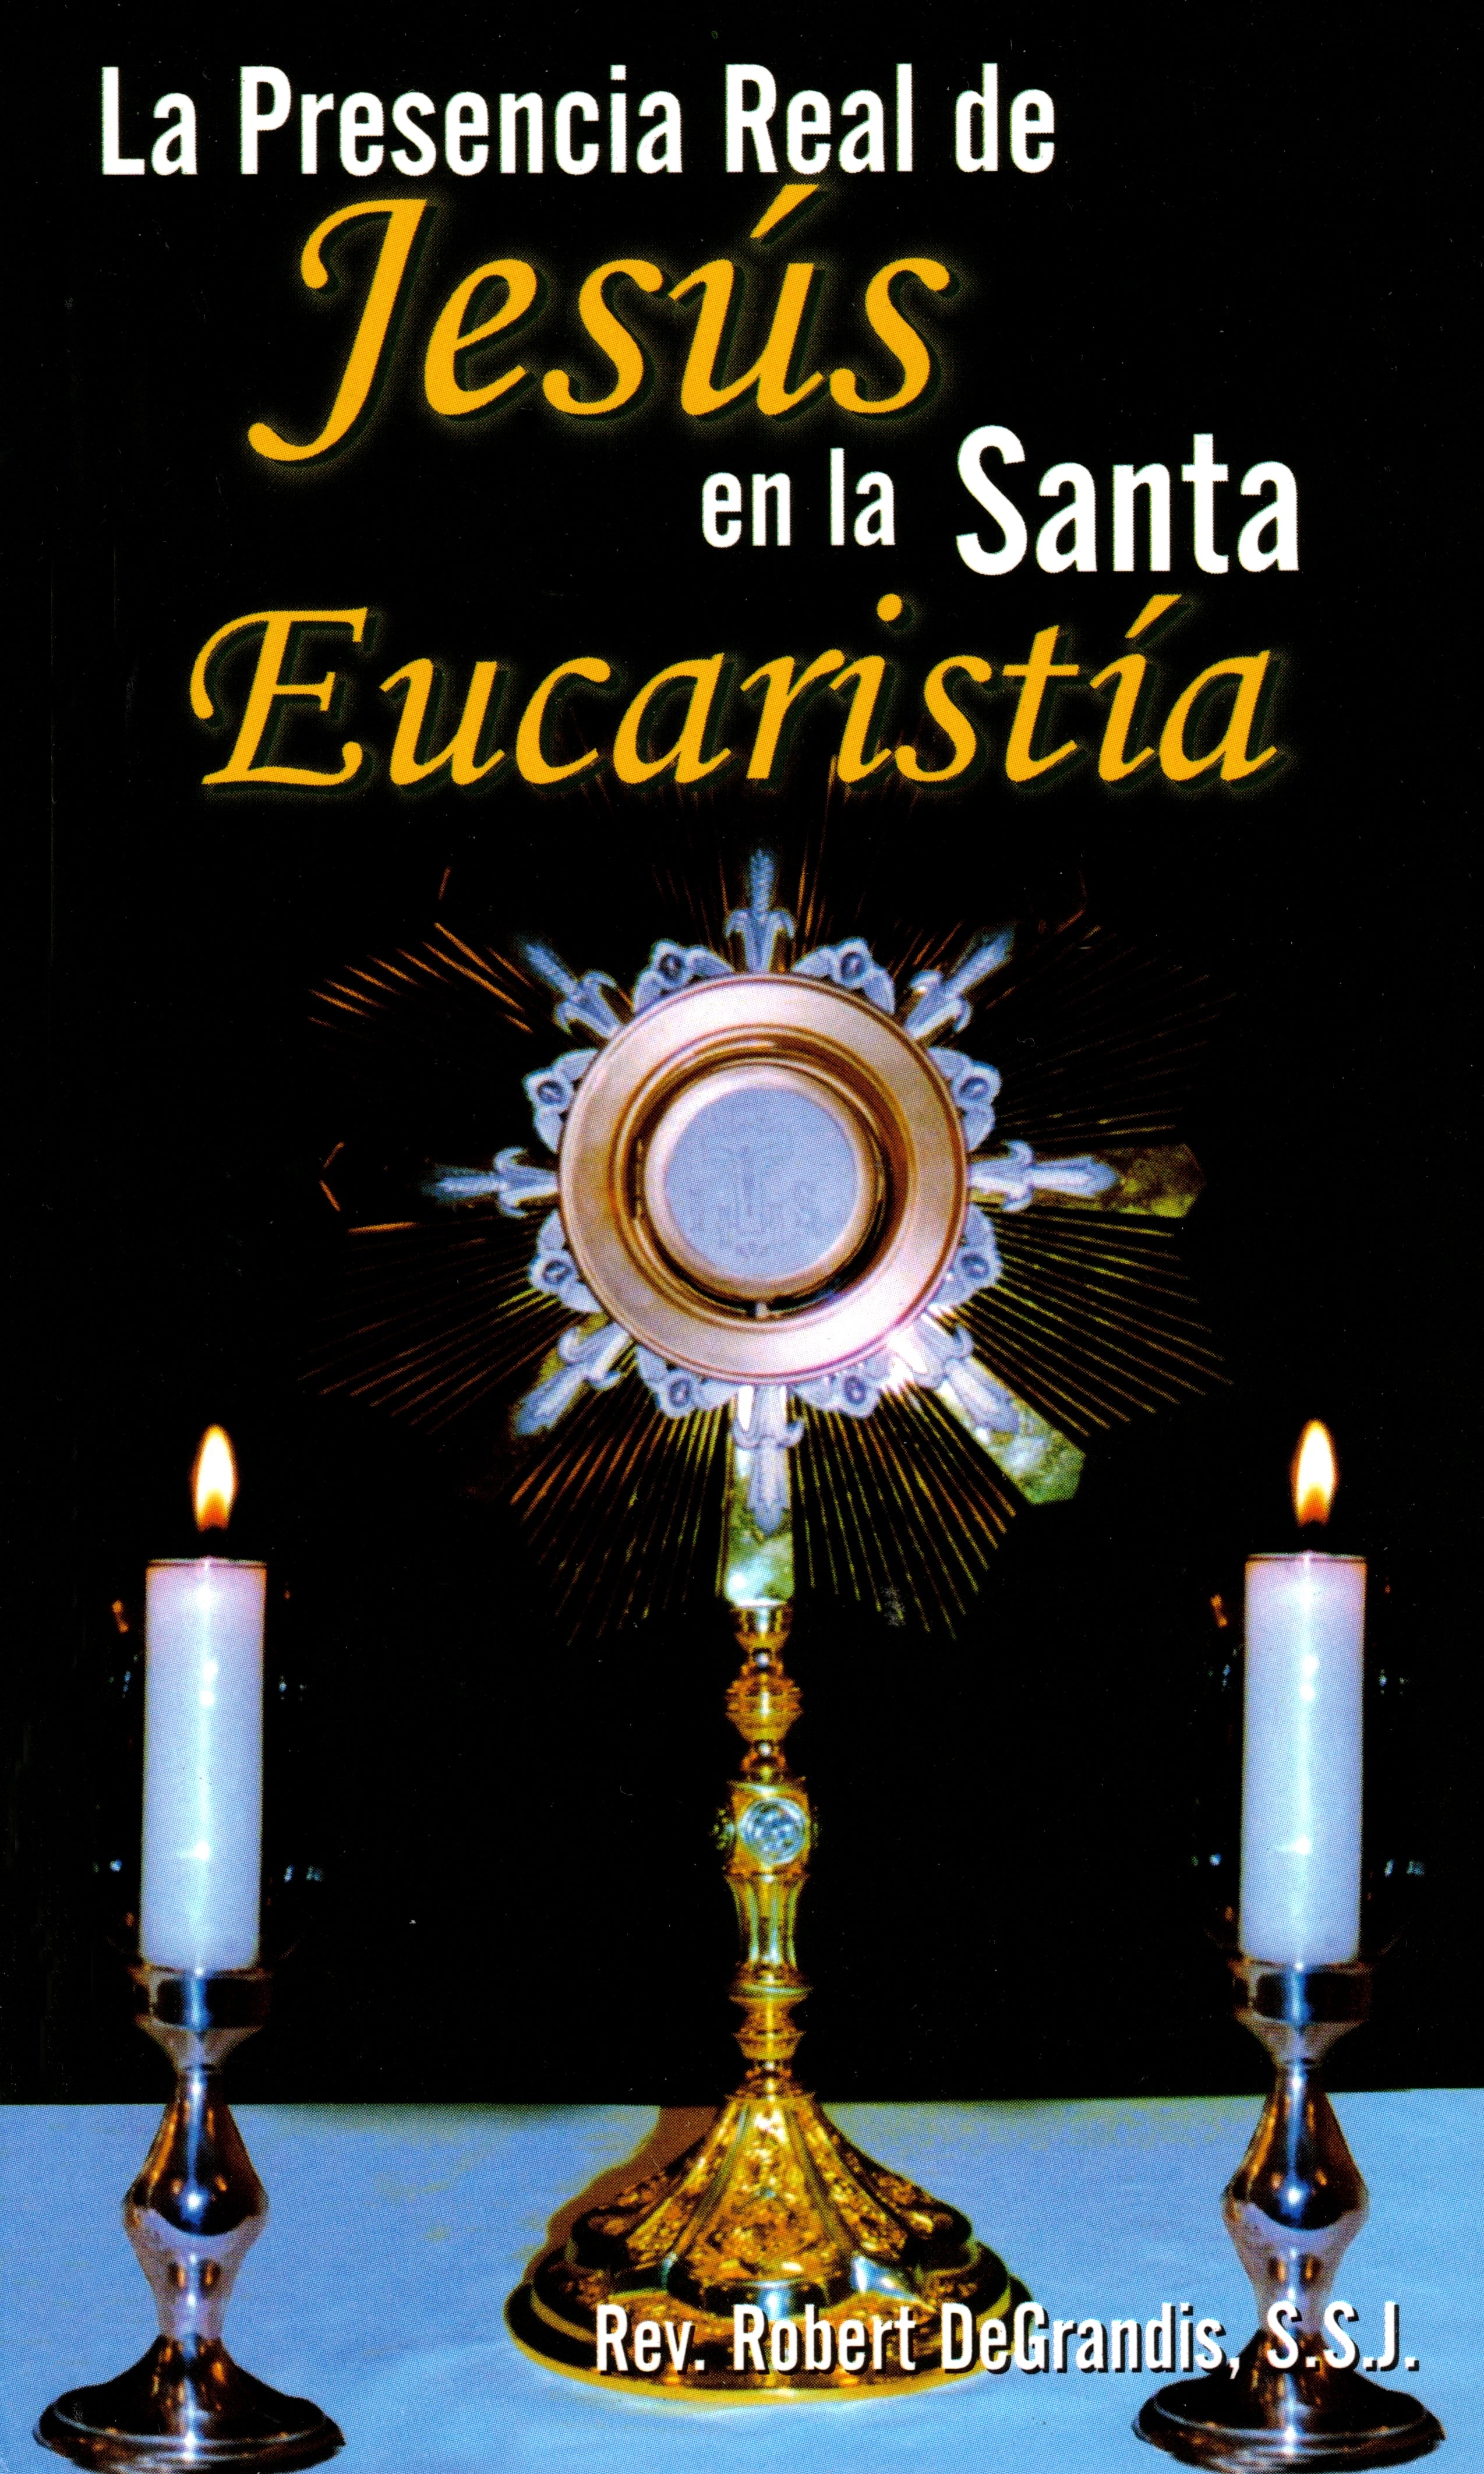 La Presencia Real de Jesús en la Santa Eucaristía